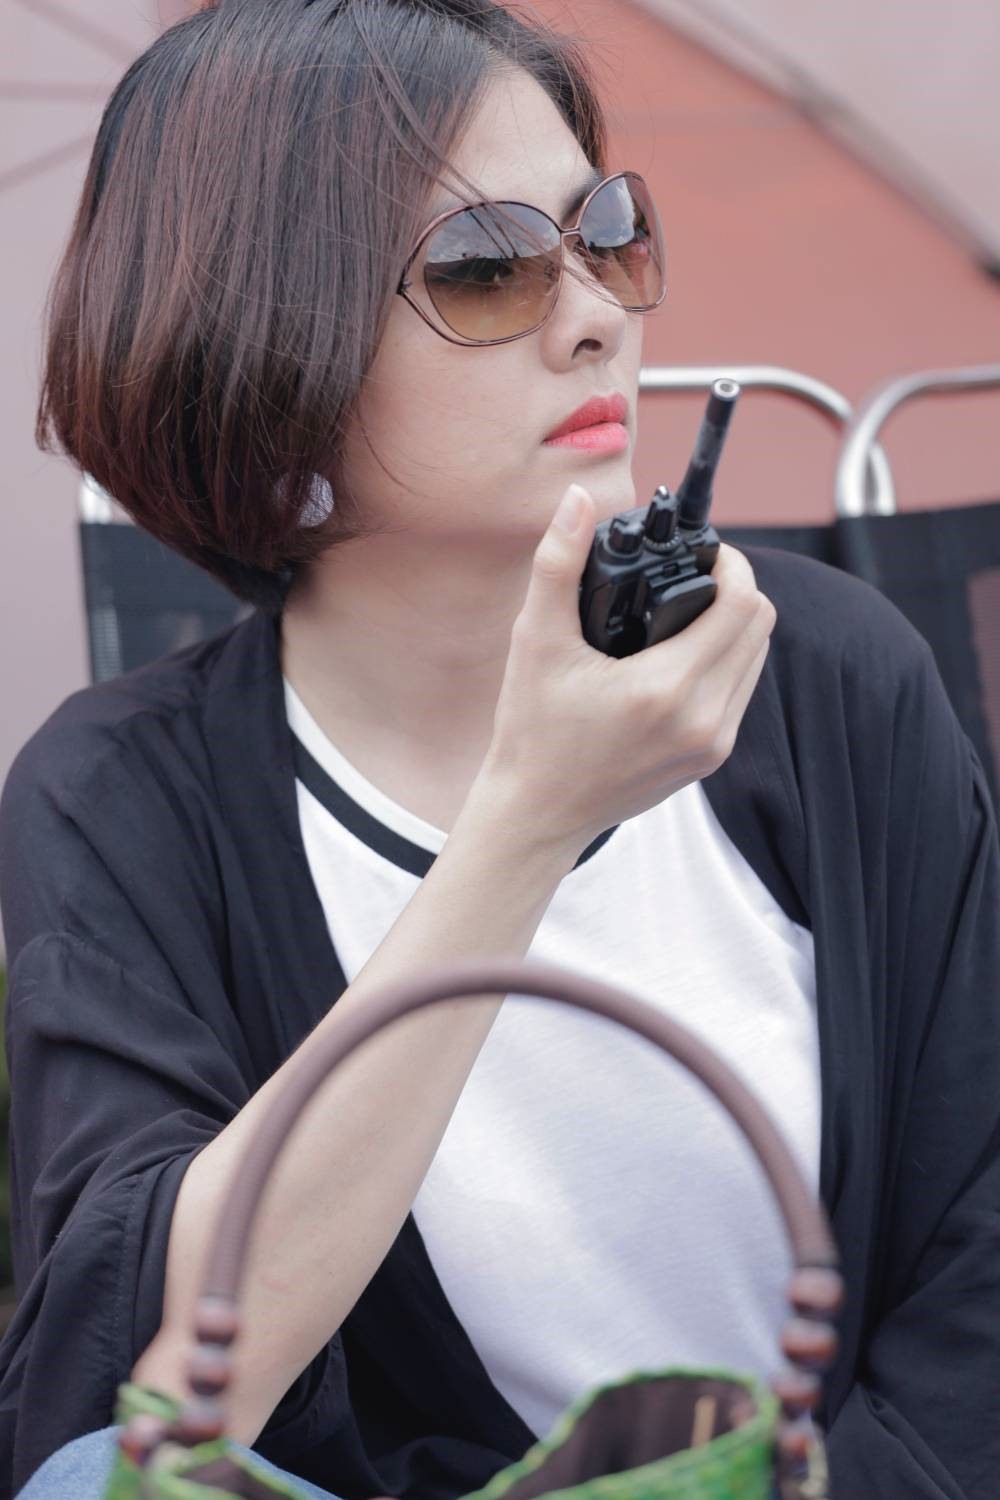 Diễn viên điện ảnh Vân Trang lần đầu tiên đảm nhiệm vai trò là nhà sản xuất phim điện ảnh Thạch Thảo.